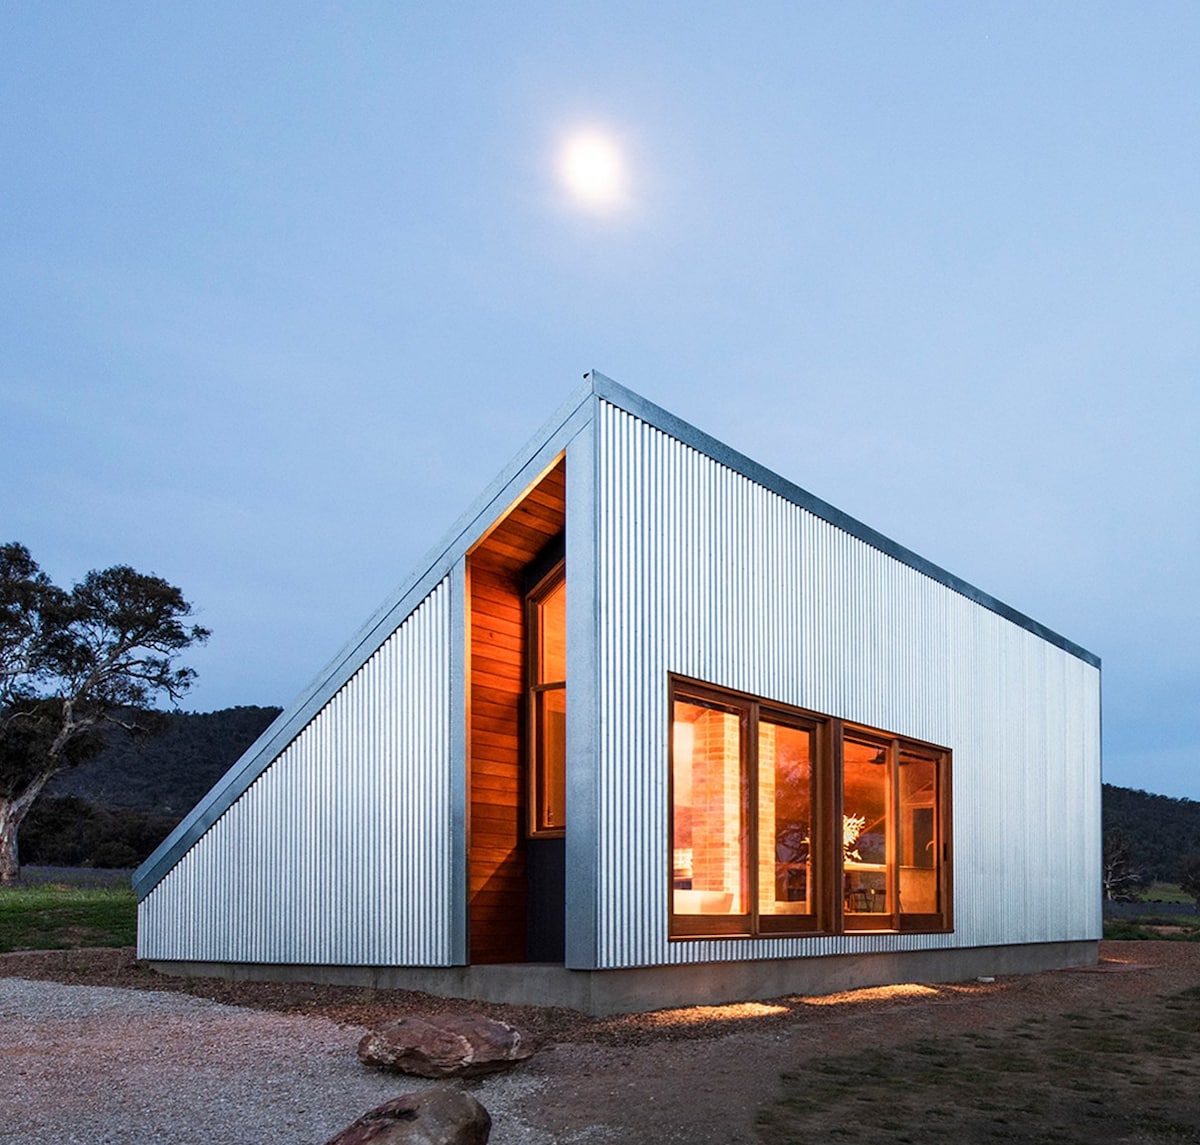 Una casa de Cameron Anderson Architects bajo la luna llena. Las ventanas y la gran puerta abierta muestran un cálido interior de madera, mientras que las ondulaciones de metal corrugado de sus paredes exteriores reflejan la luz de la luna.